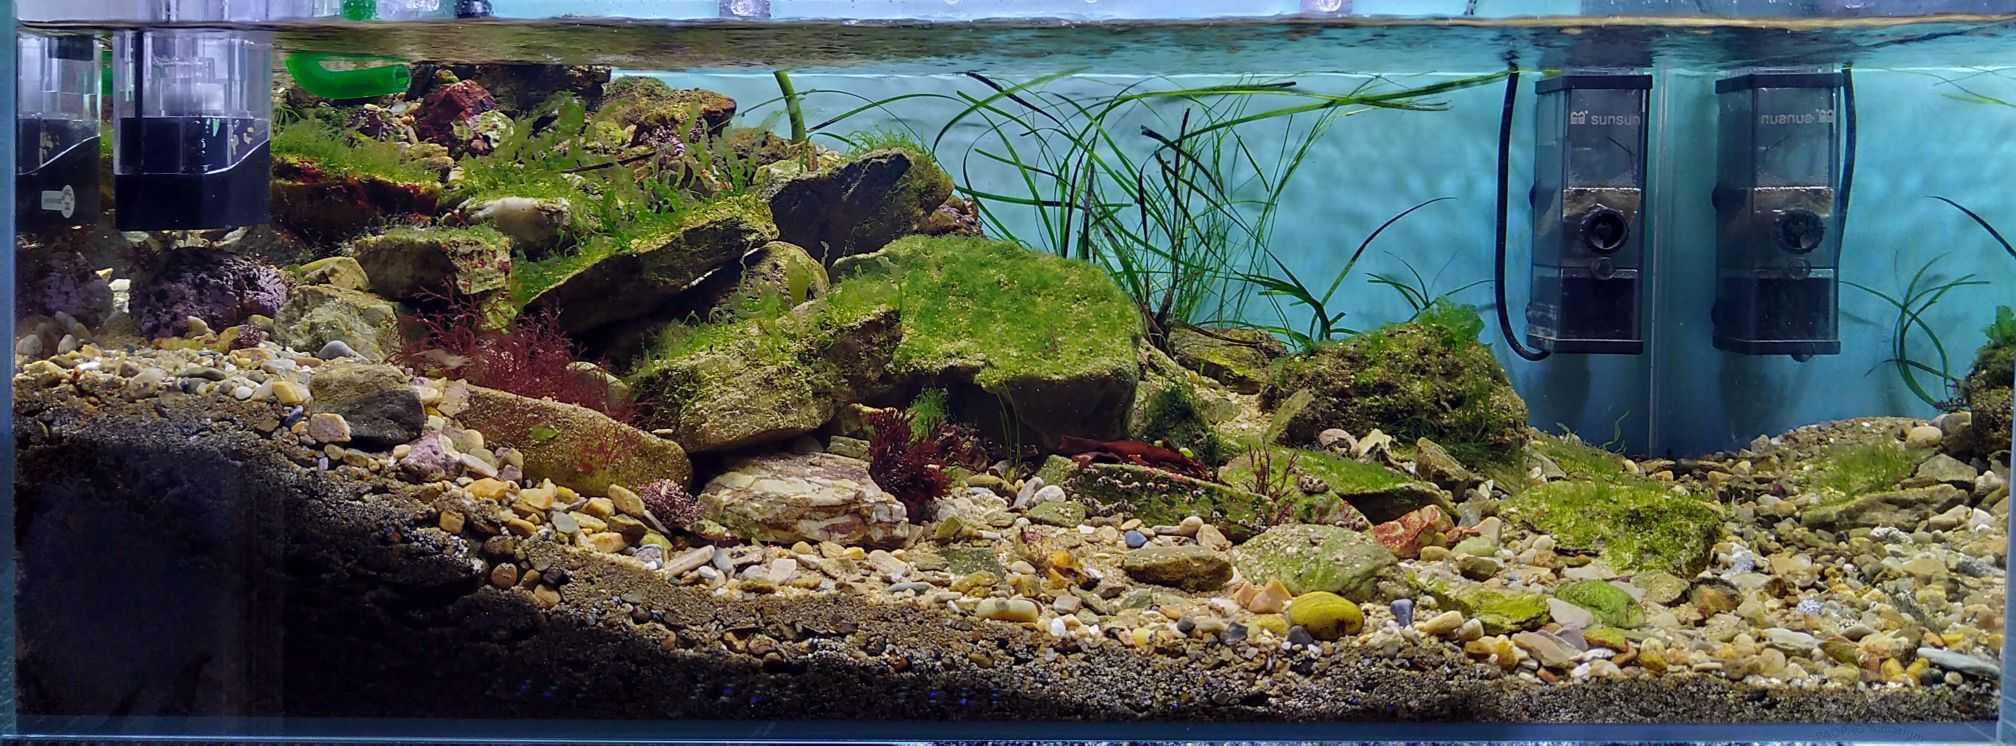 原生海藻缸-图1